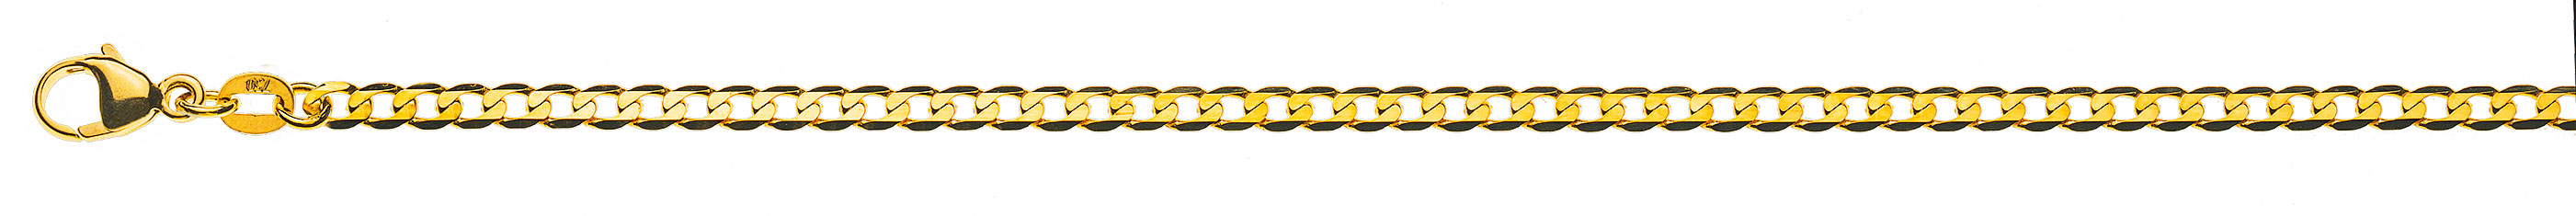 AURONOS Prestige Halskette Gelbgold 18K Panzerkette extraflach diamantiert 55cm 3.1mm